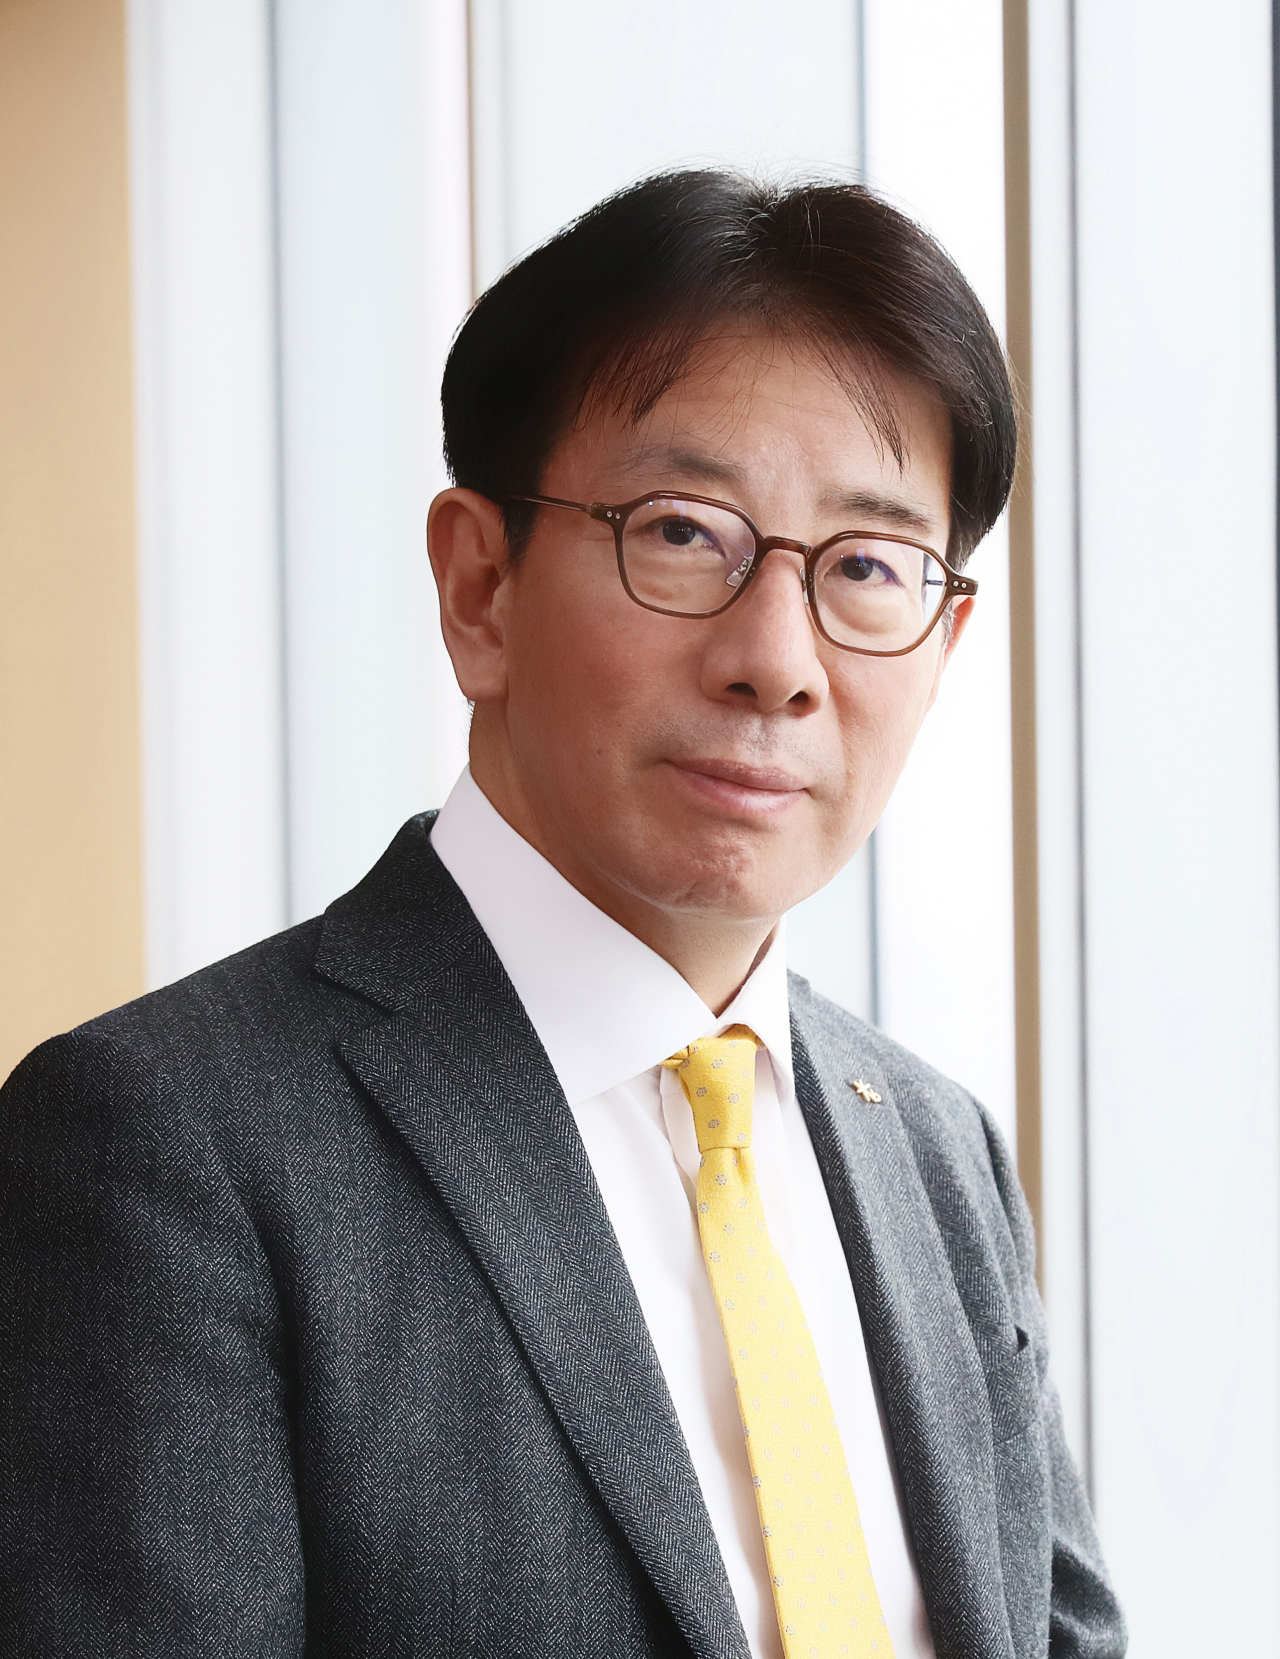 KB Kookmin Bank CEO Lee Jae-keun